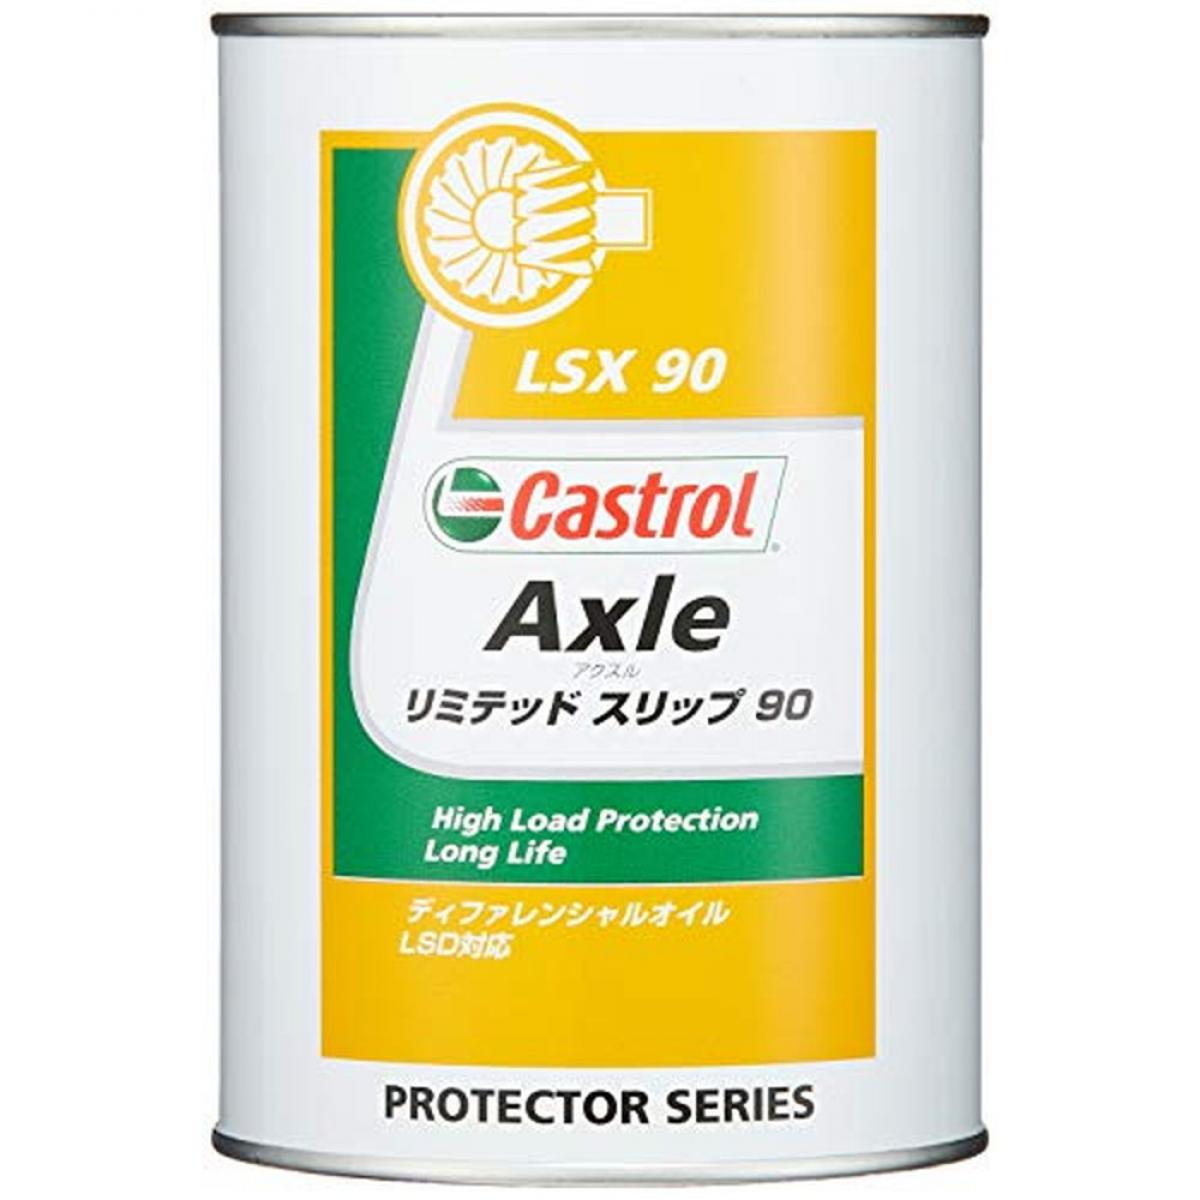 カストロール ギヤーオイル Axle リミテッド スリップ 90 1L ディファレンシャルギヤー用 (LSD対応) GL-5 Castrol